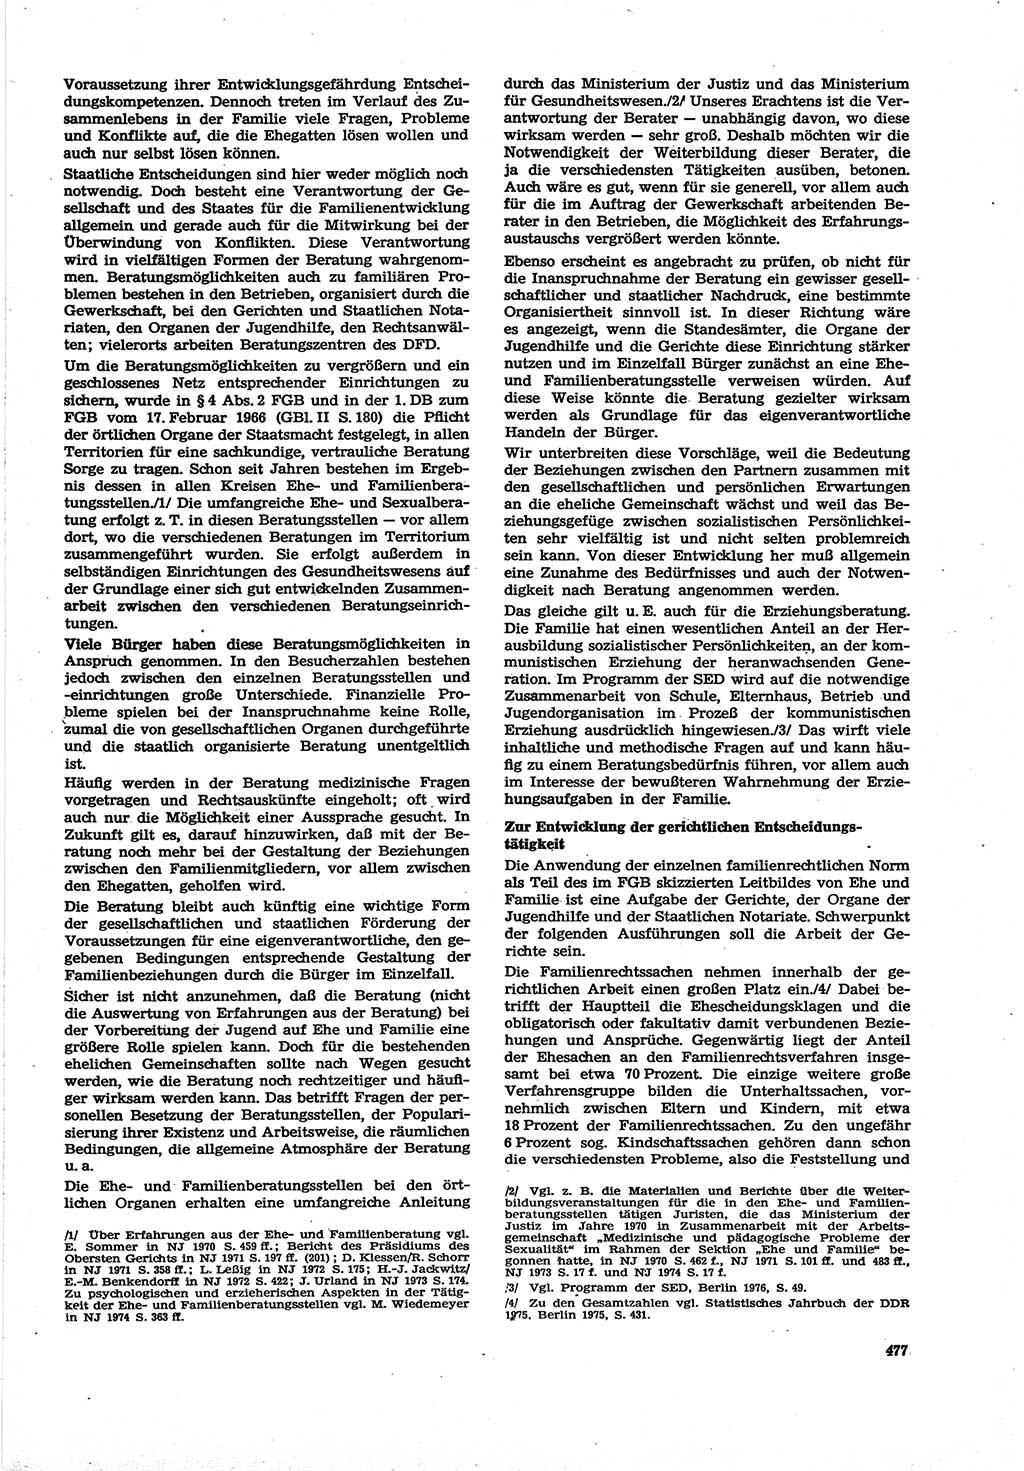 Neue Justiz (NJ), Zeitschrift für Recht und Rechtswissenschaft [Deutsche Demokratische Republik (DDR)], 30. Jahrgang 1976, Seite 477 (NJ DDR 1976, S. 477)